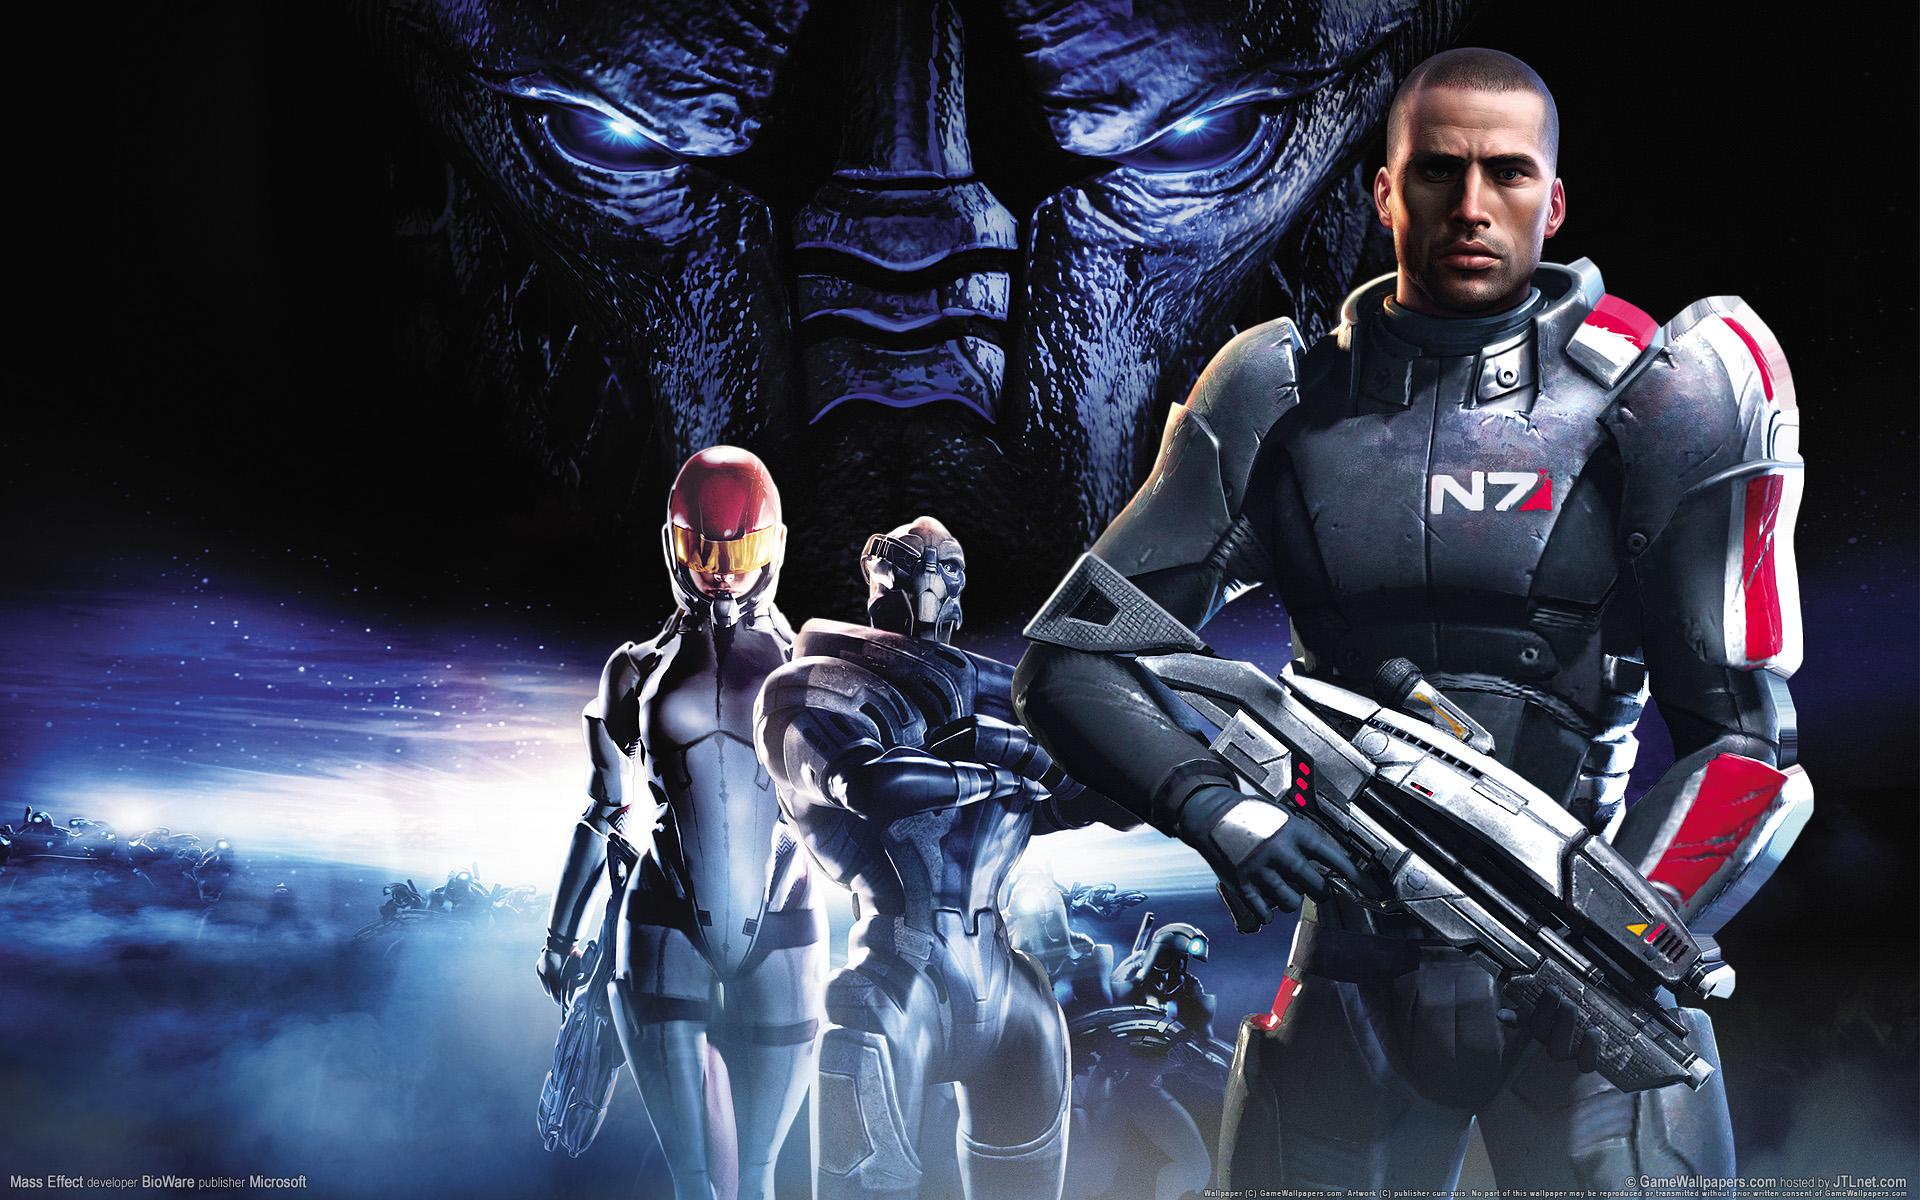 Mass Effect, la trilogia è pronta a sbarcare su PlayStation 4 e Xbox One?